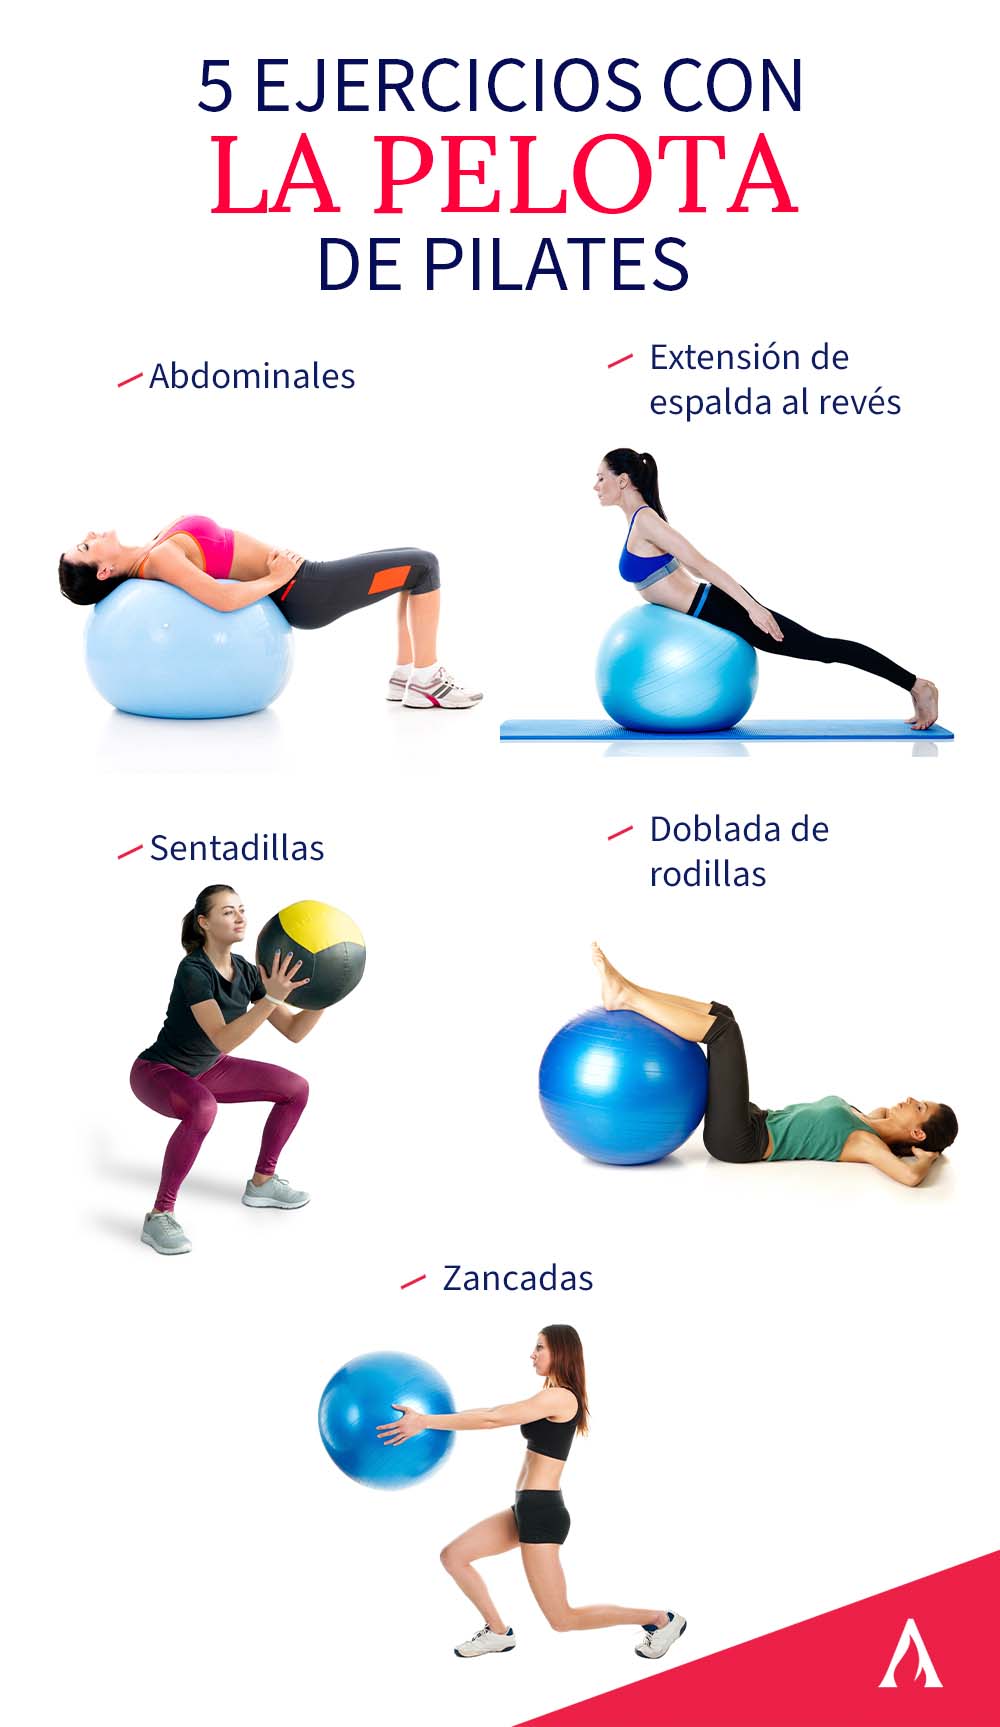 5-ejercicios-con-la-pelota-de-pilates